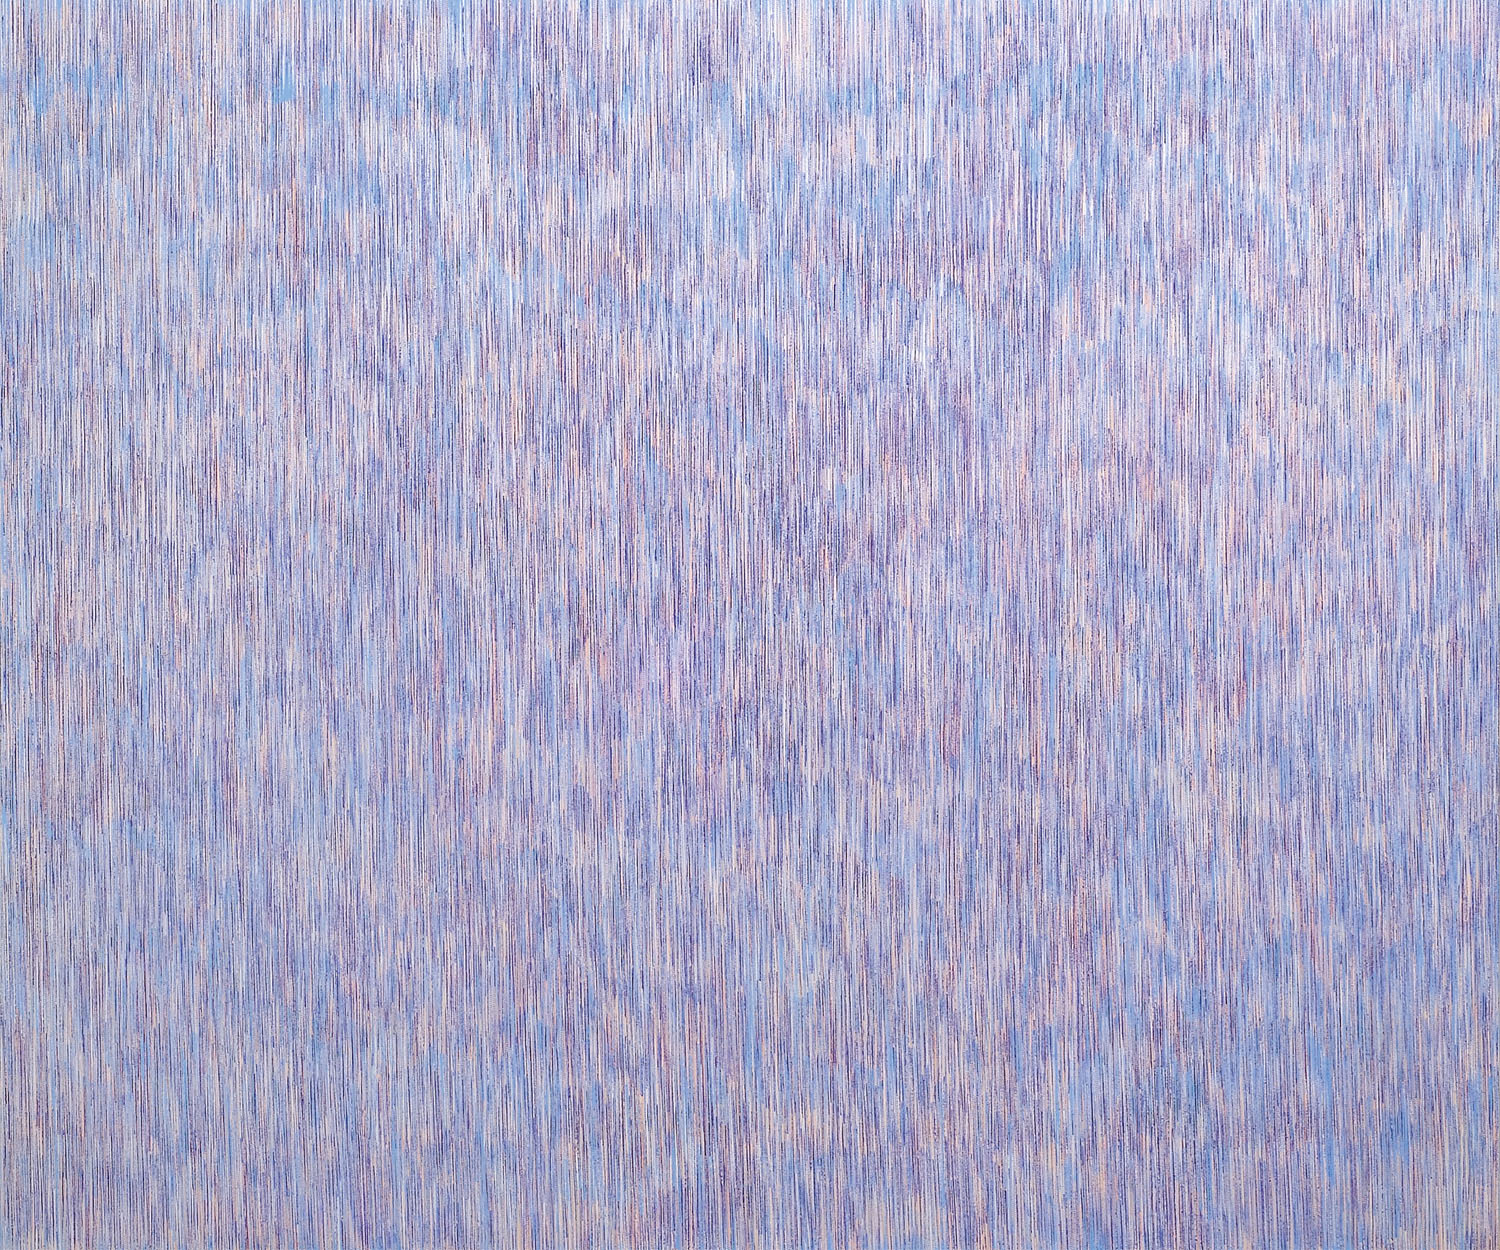 Nikola Dimitrov, Große Komposition, 2011, 250 x 300 cm, Pigmente, Bindemittel, Lösungsmittel auf Leinwand